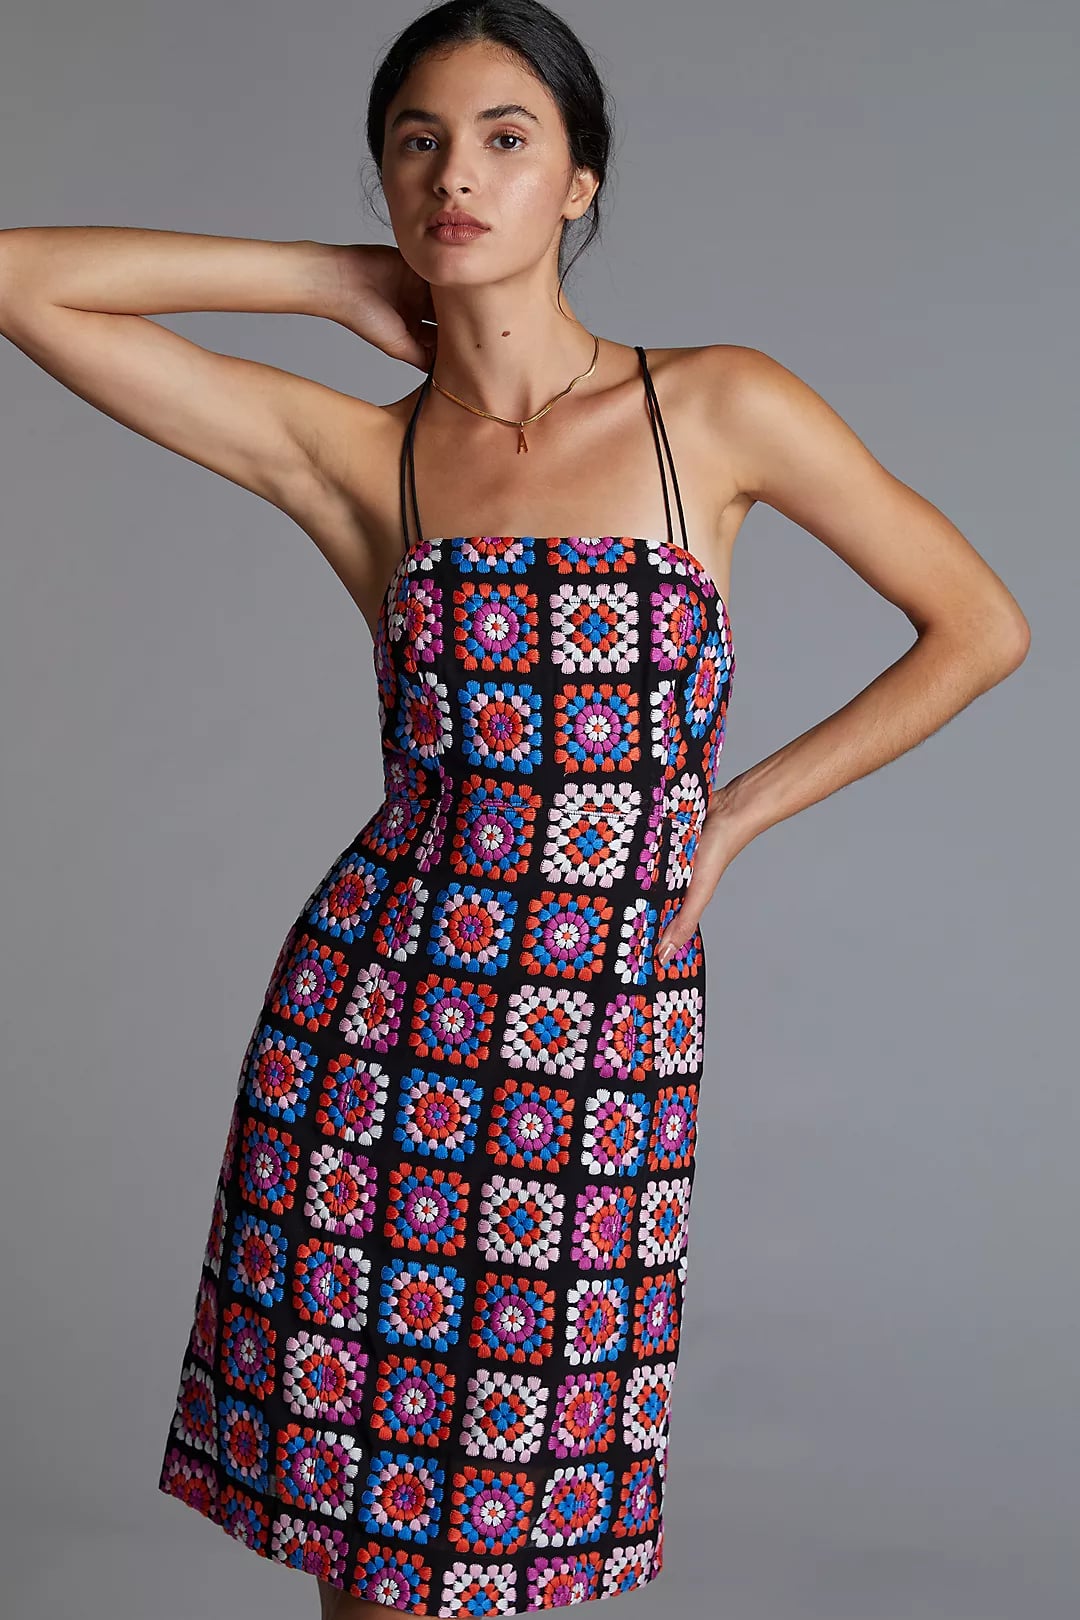 Best Crochet Dresses for Women: How to Wear & Style Crochet Trend